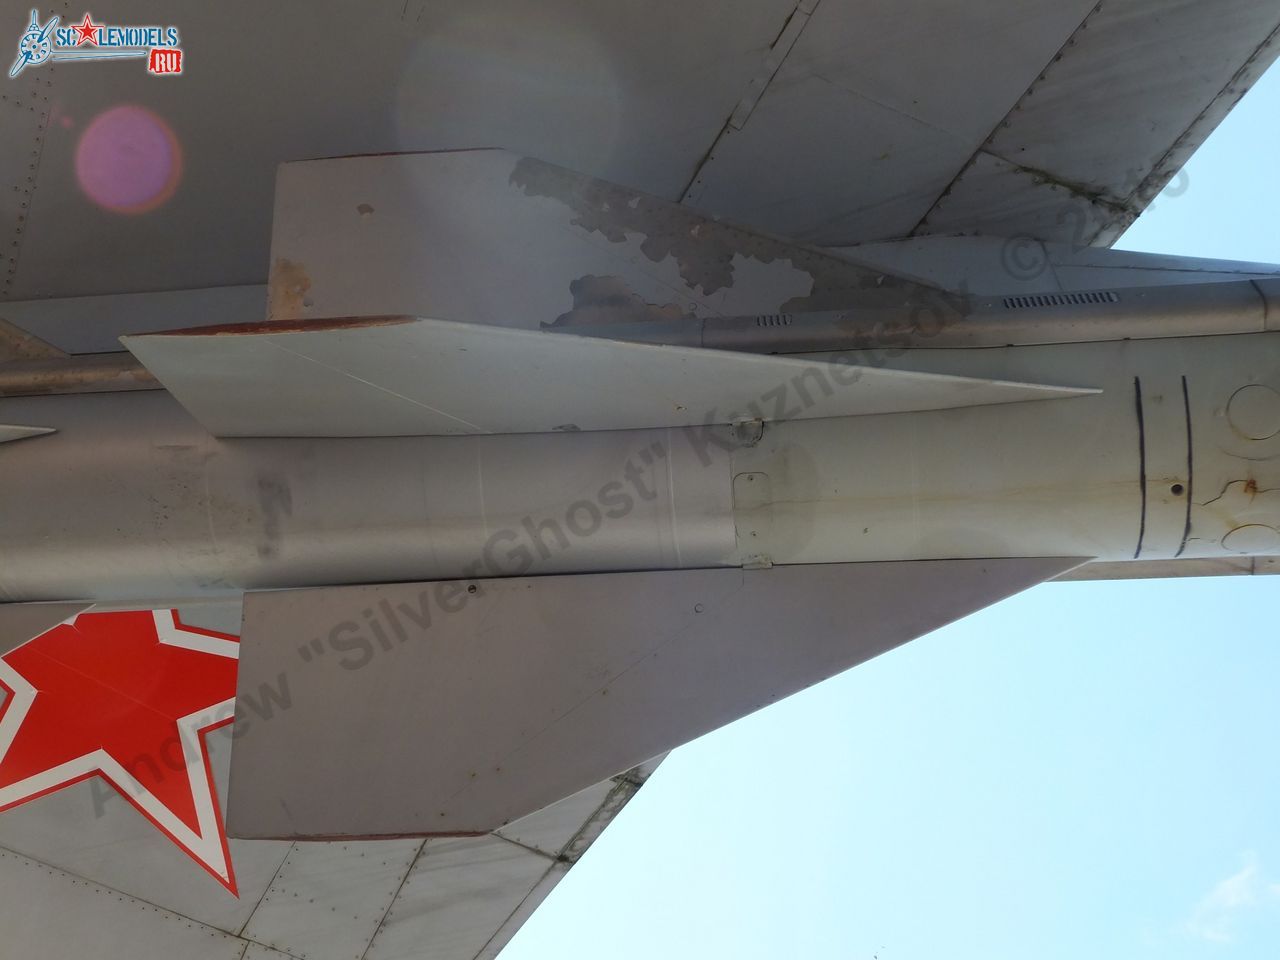 Kh-58 missile_0037.jpg